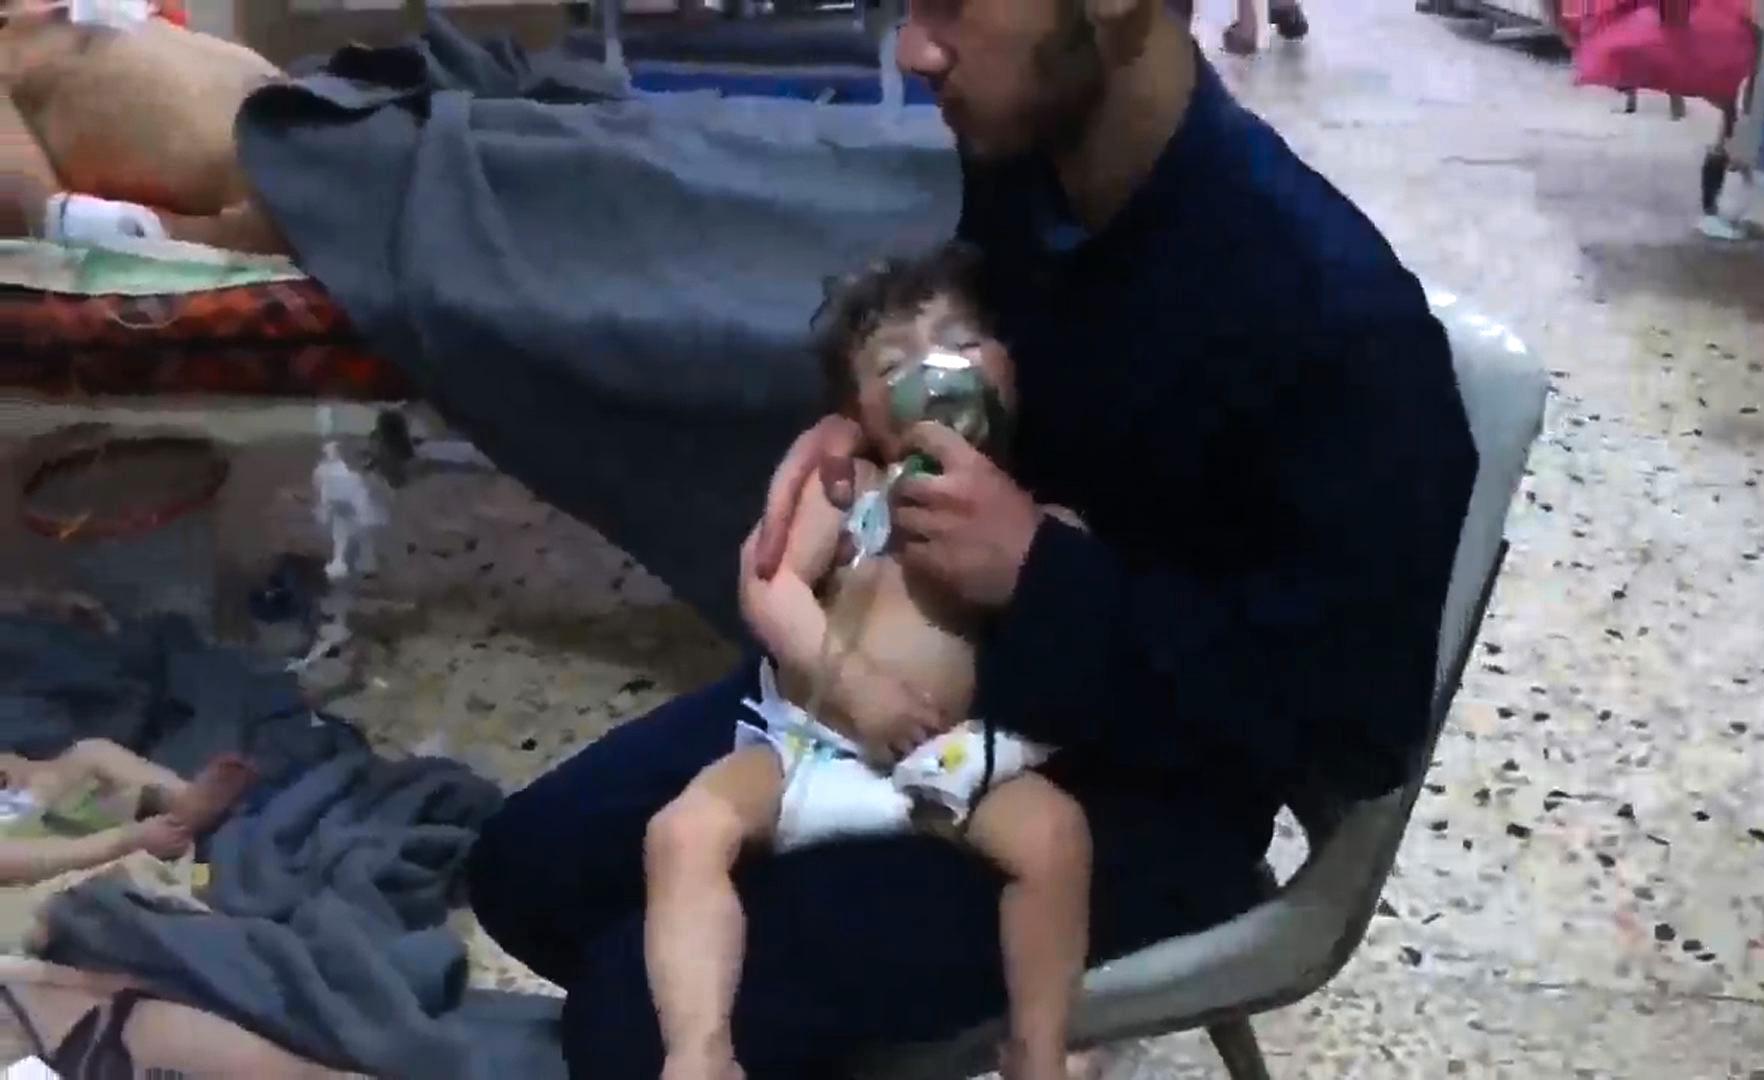 Den misstänkta kemvapenattacken i Douma krävde fler än 70 människoliv.